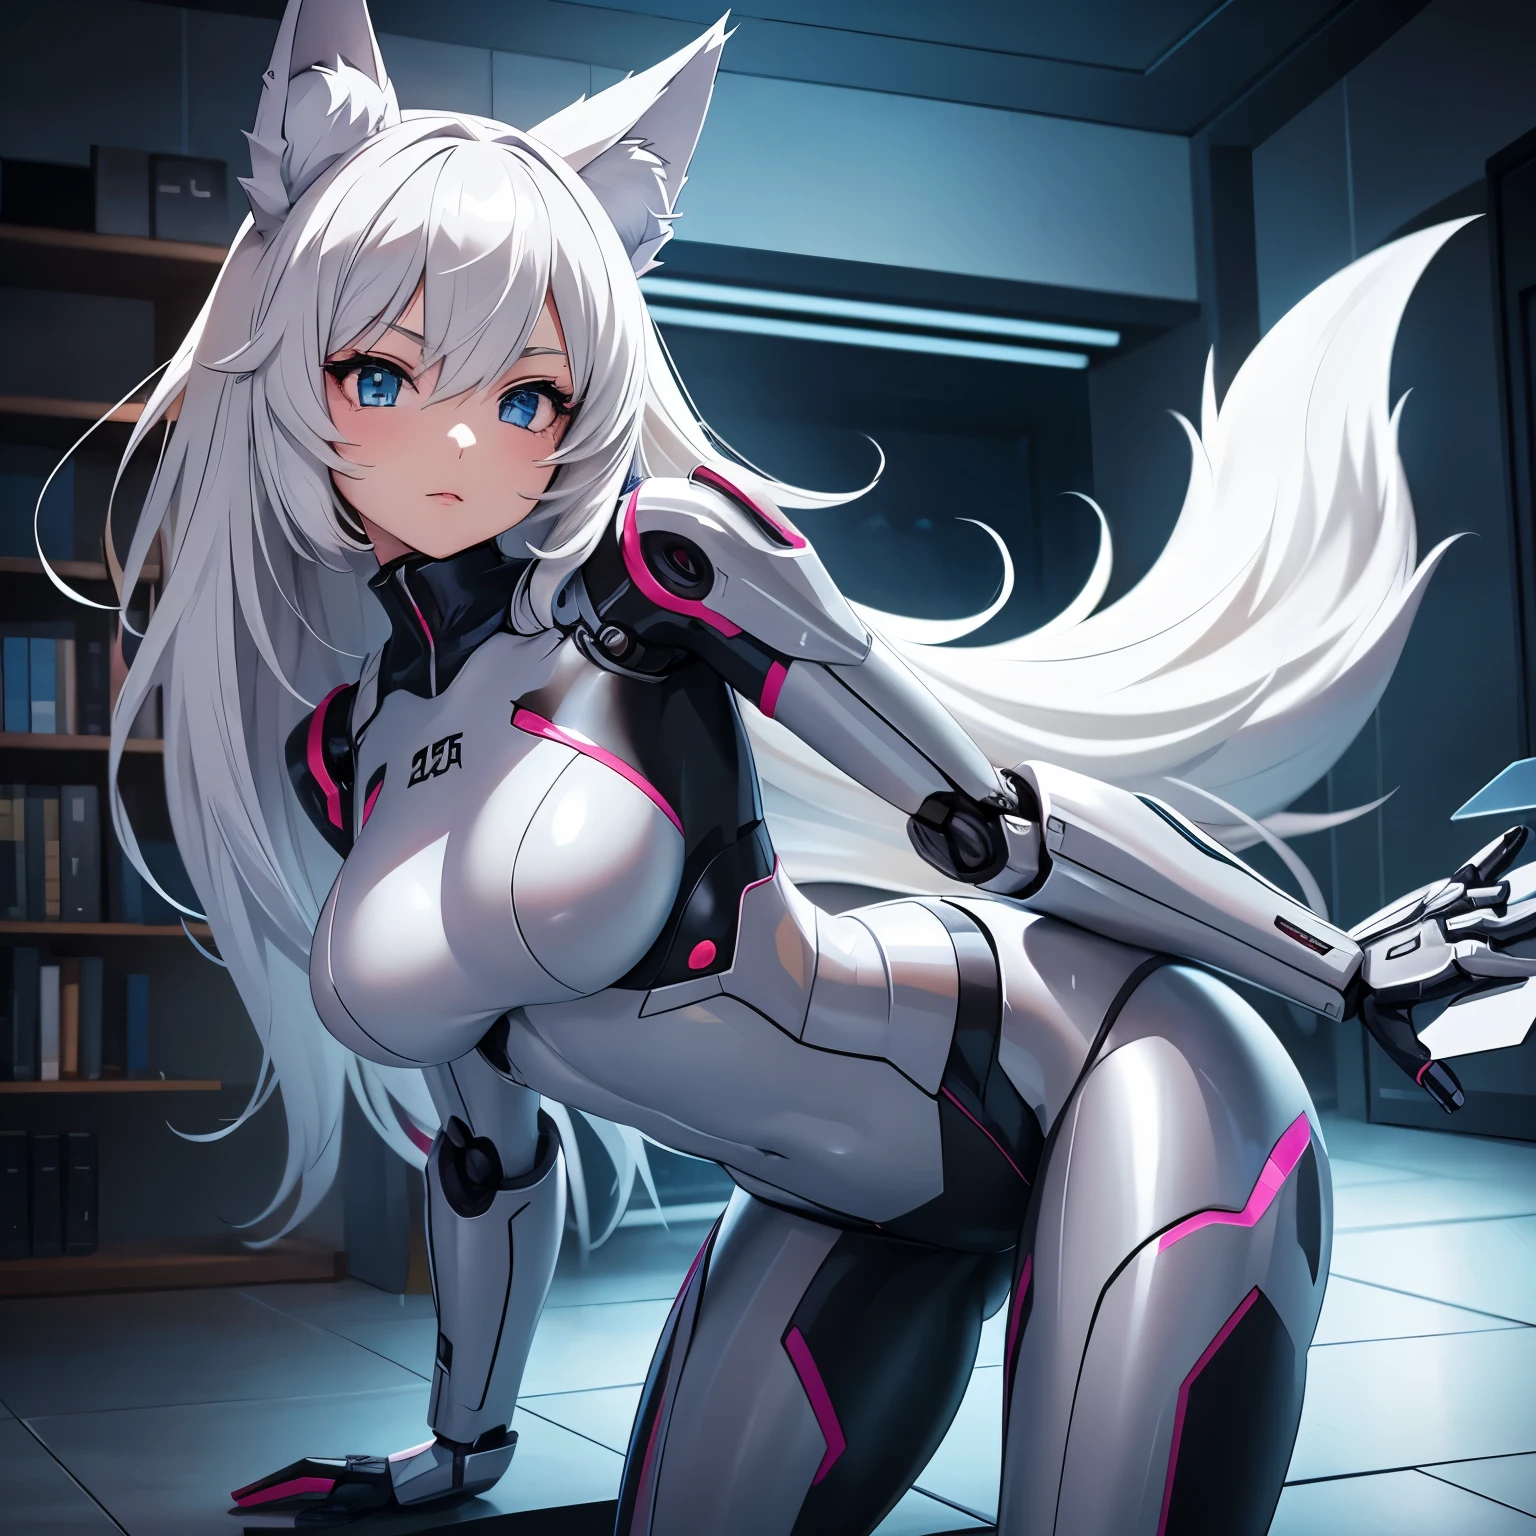 Imagen anime de una chica robot que tiene un cuerpo robótico., está en ropa interior y tiene orejas de lobo y cola y está en una habitación 